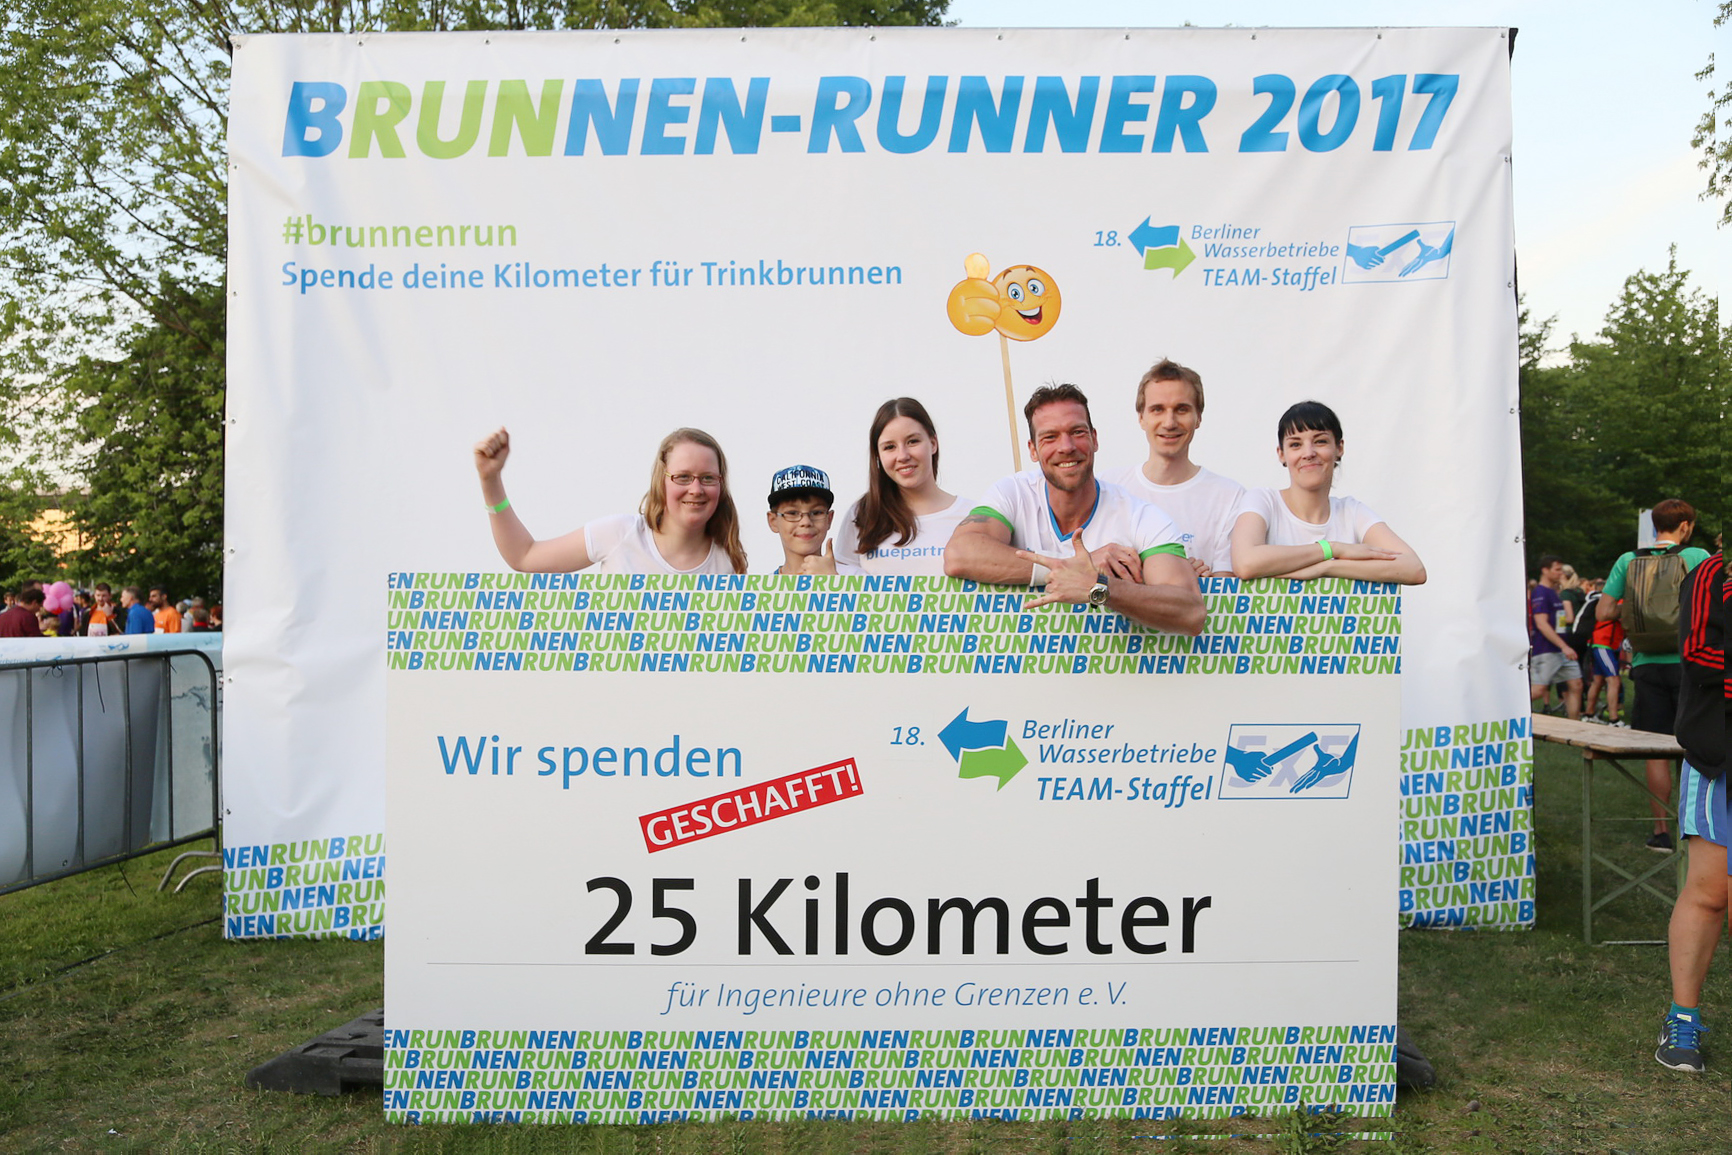 Teamstaffel 2017 – Wir spenden 25 km